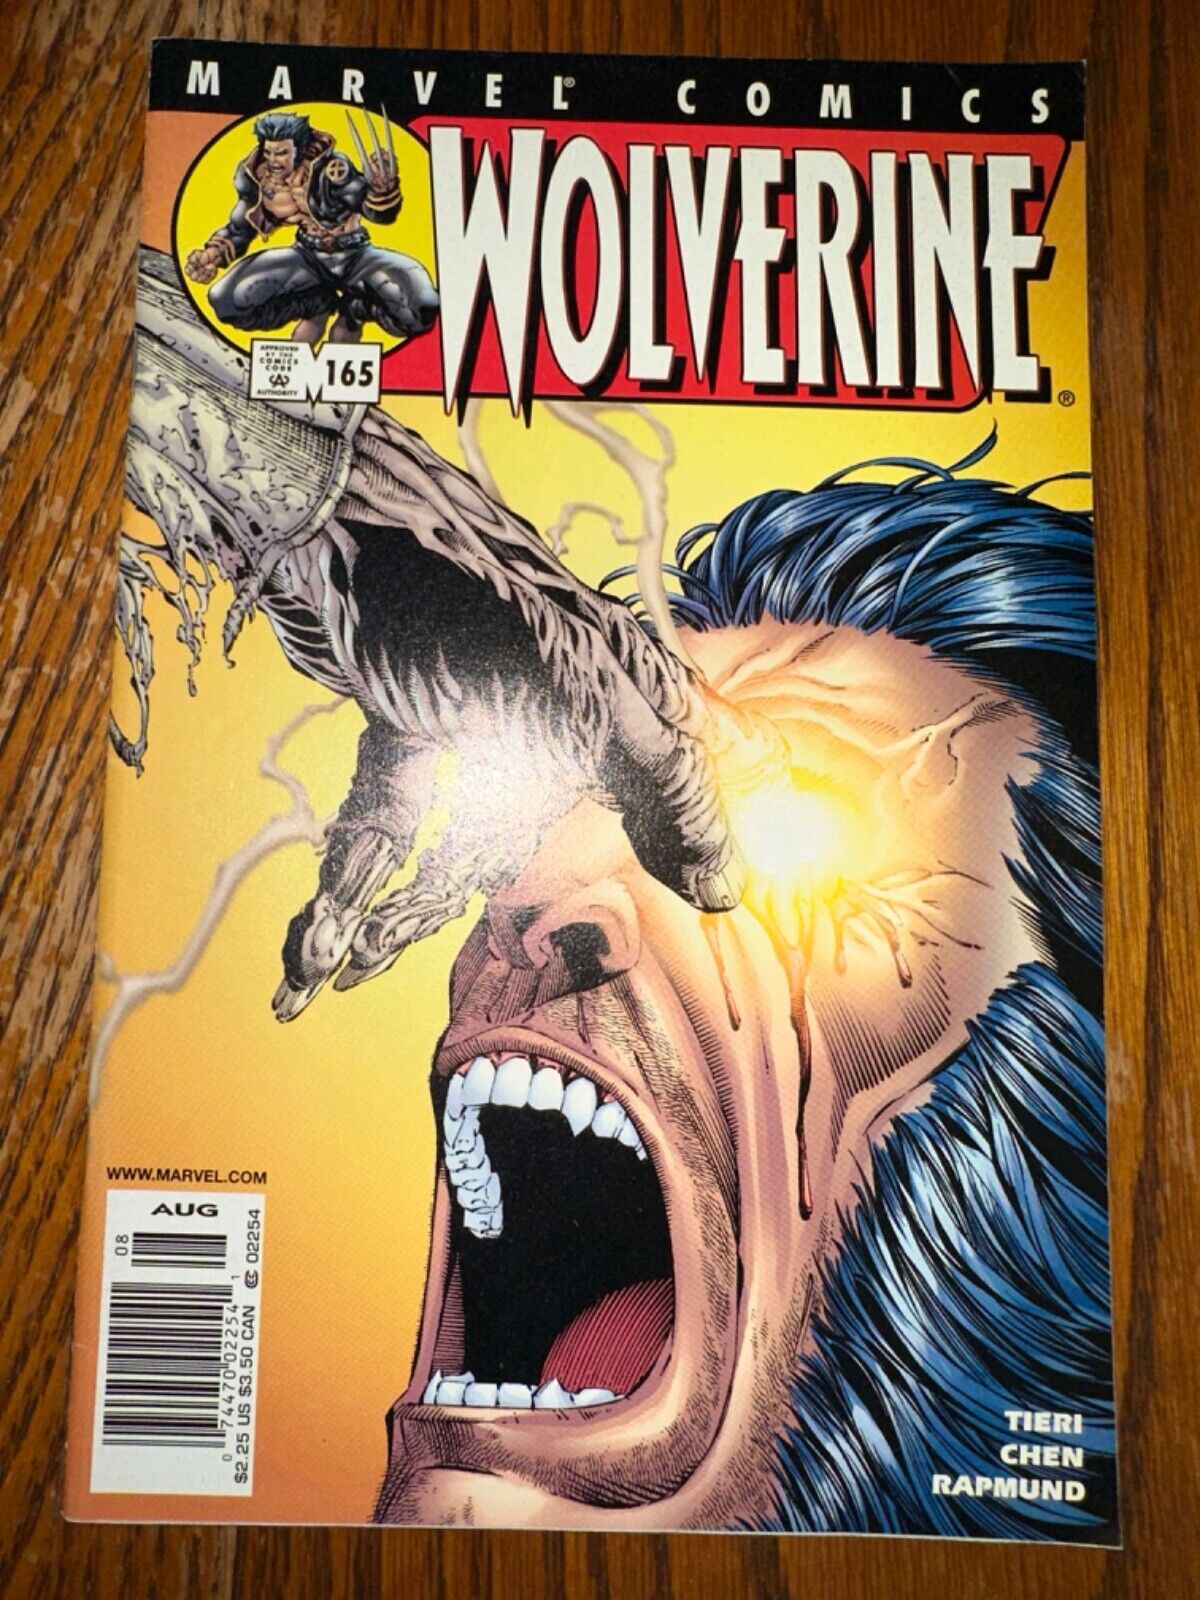 WOLVERINE (1988) #165 (MARVEL 2001) Kevin Garnett got milk ad on back cover